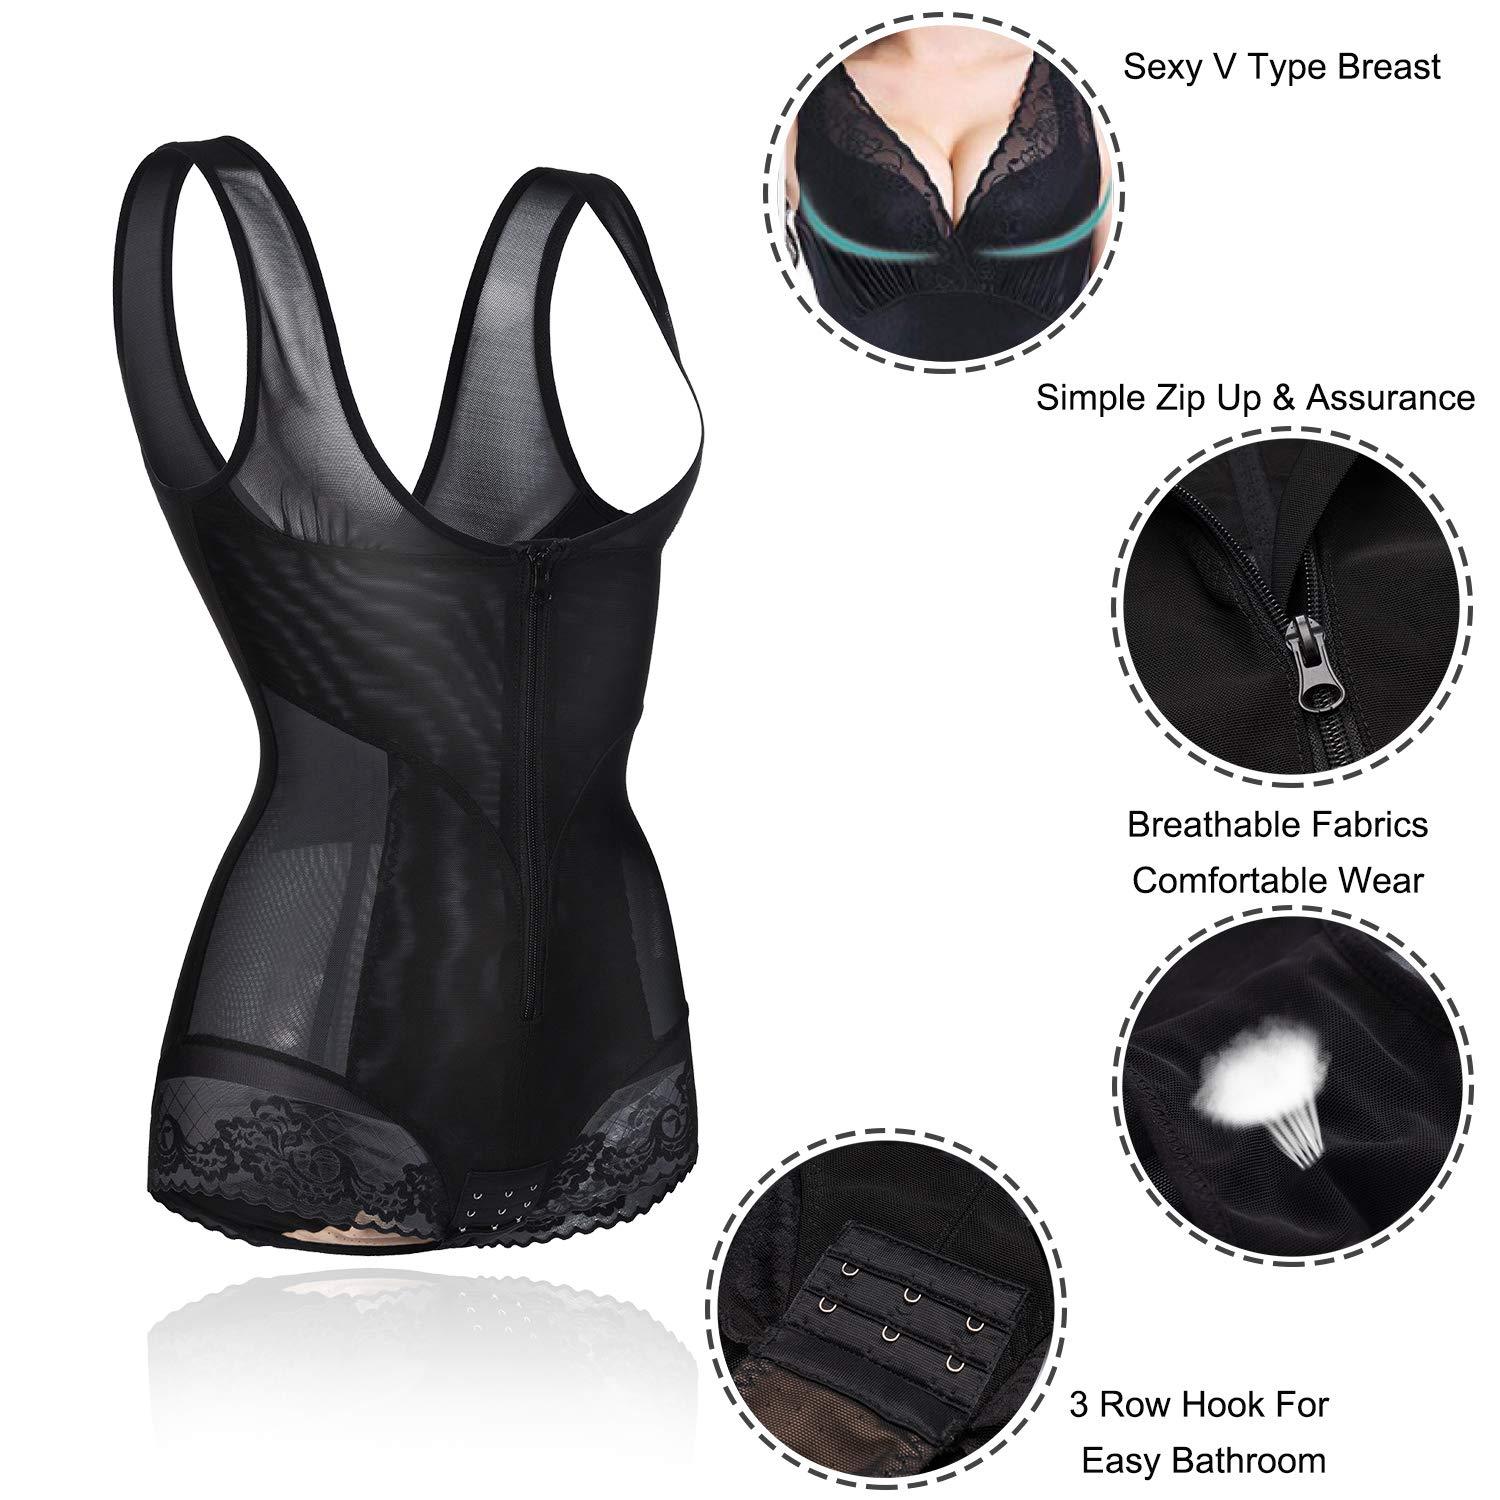 Womens Breathable Hourglass Open Back Shapewear Bodysuit - Nebility